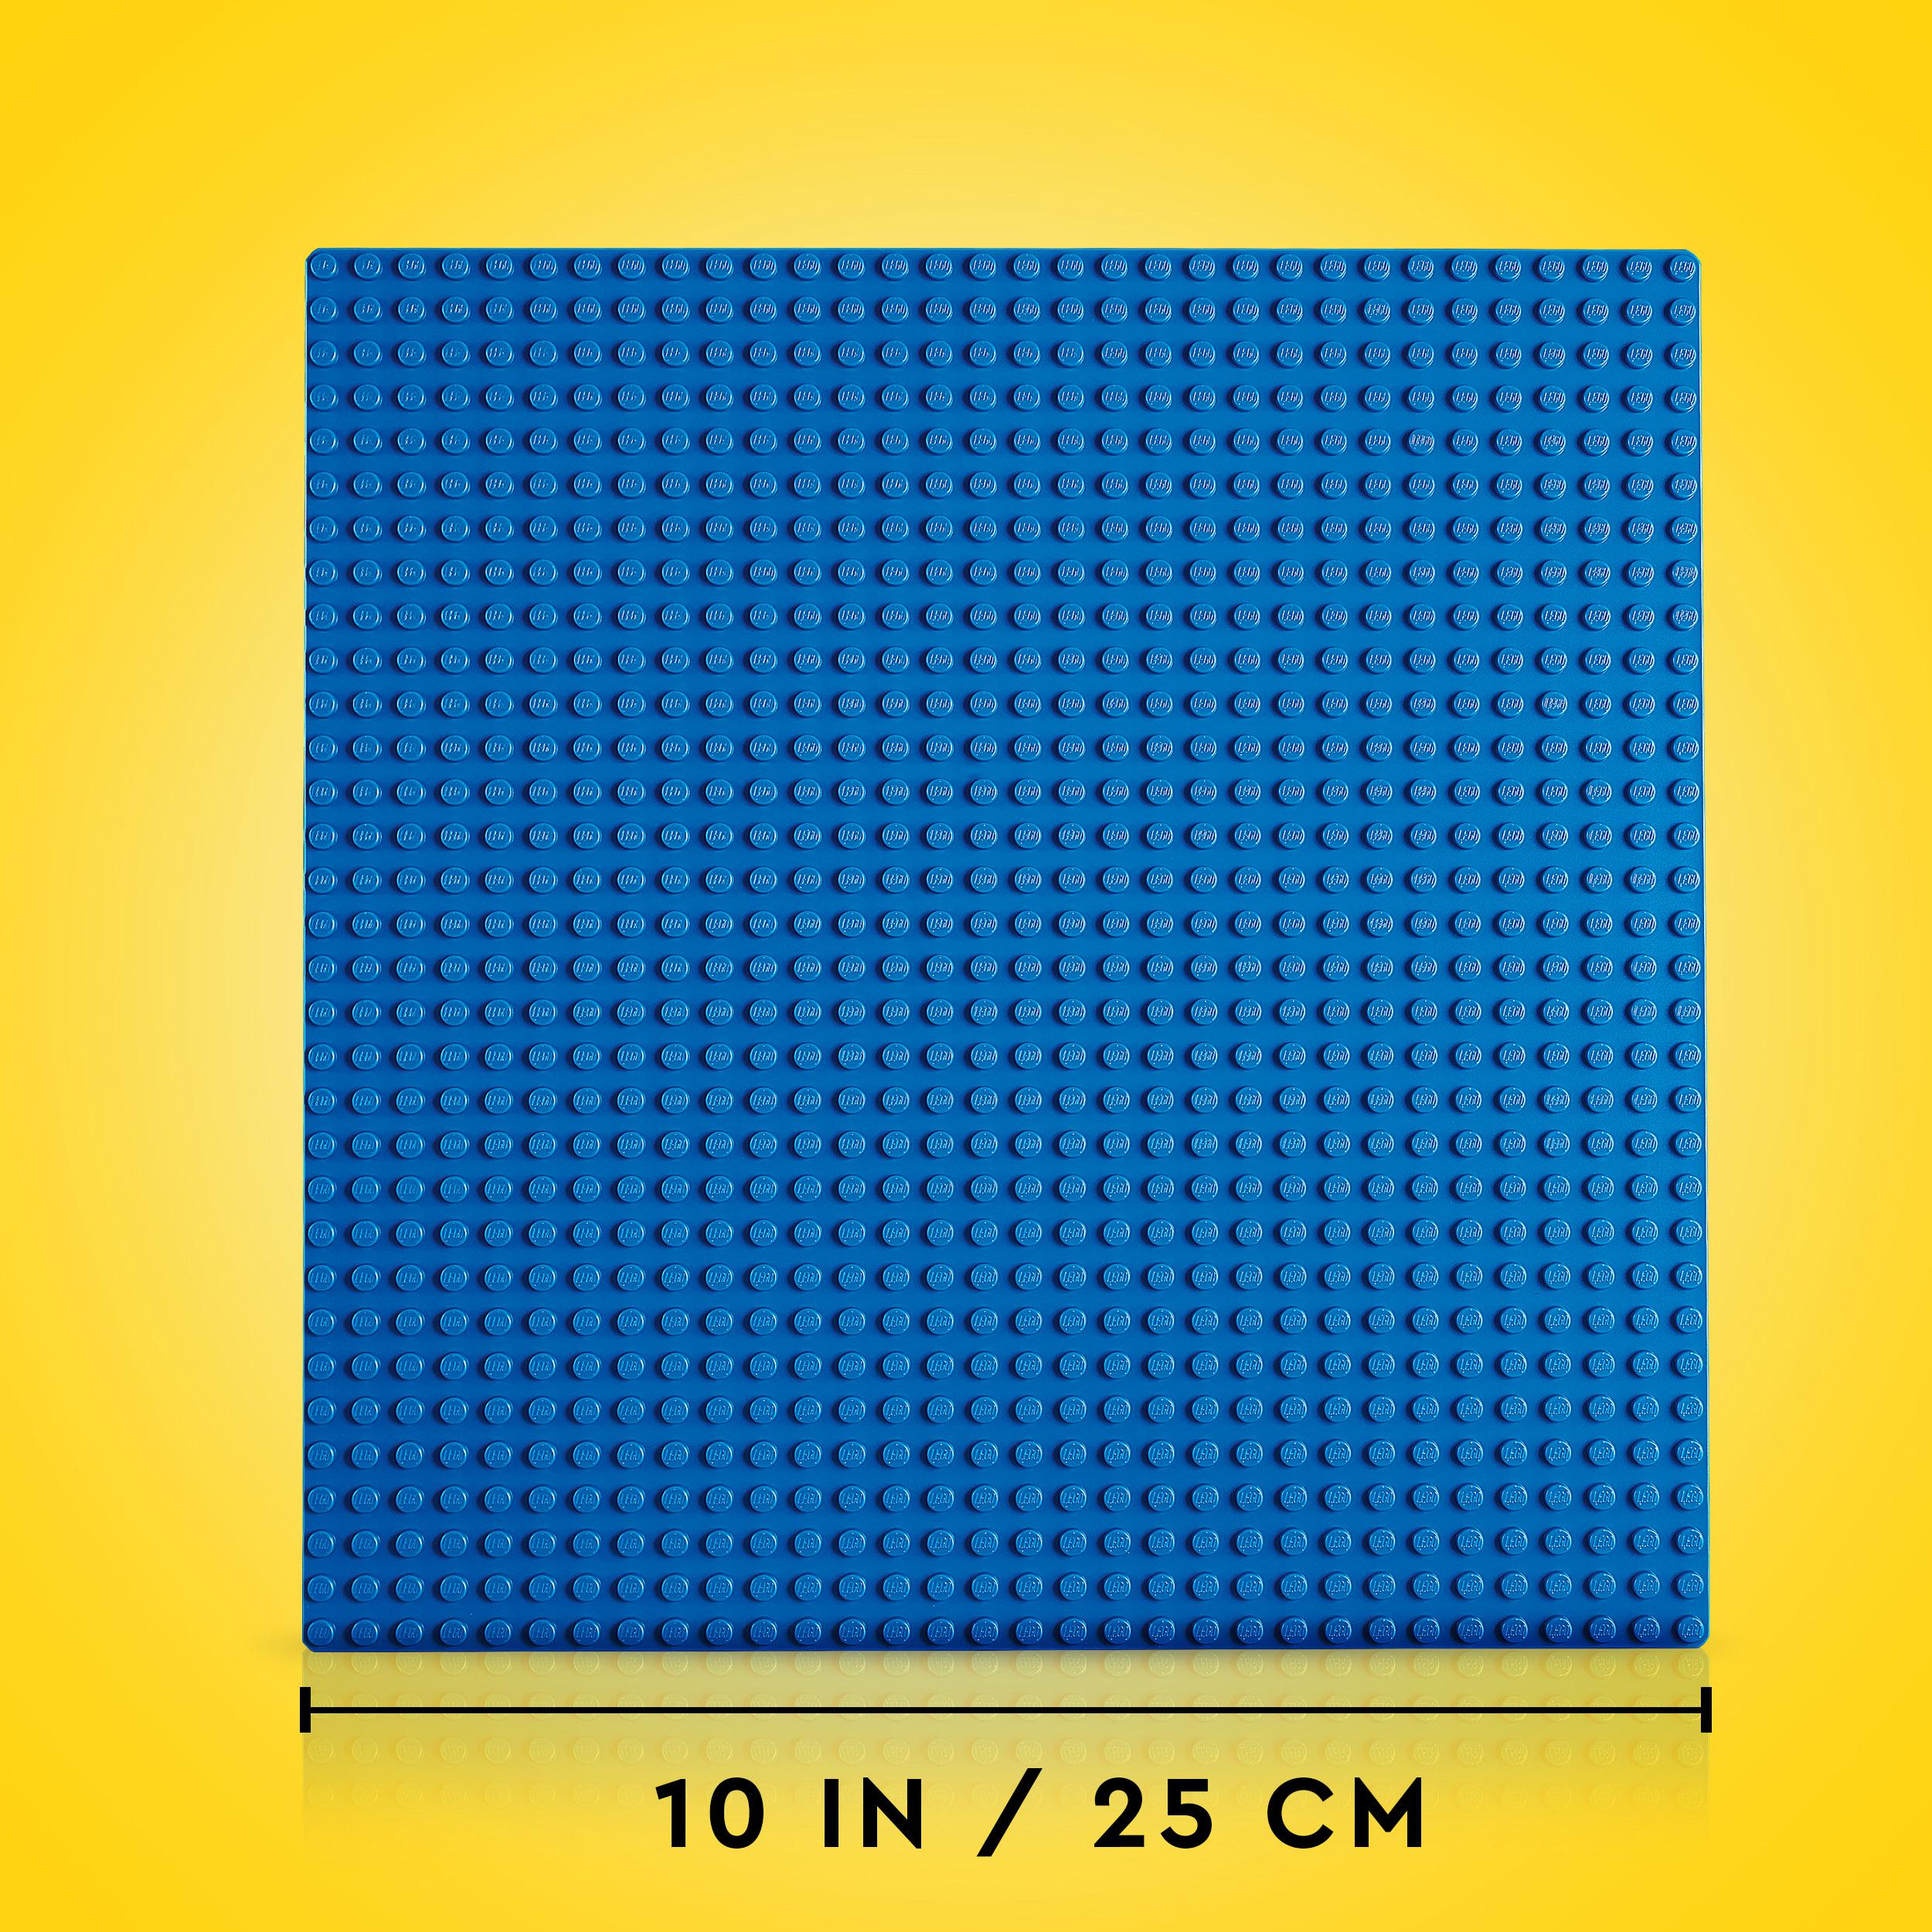 Blaue Bauplatte Classic LEGO Bausatz, Blau 11025